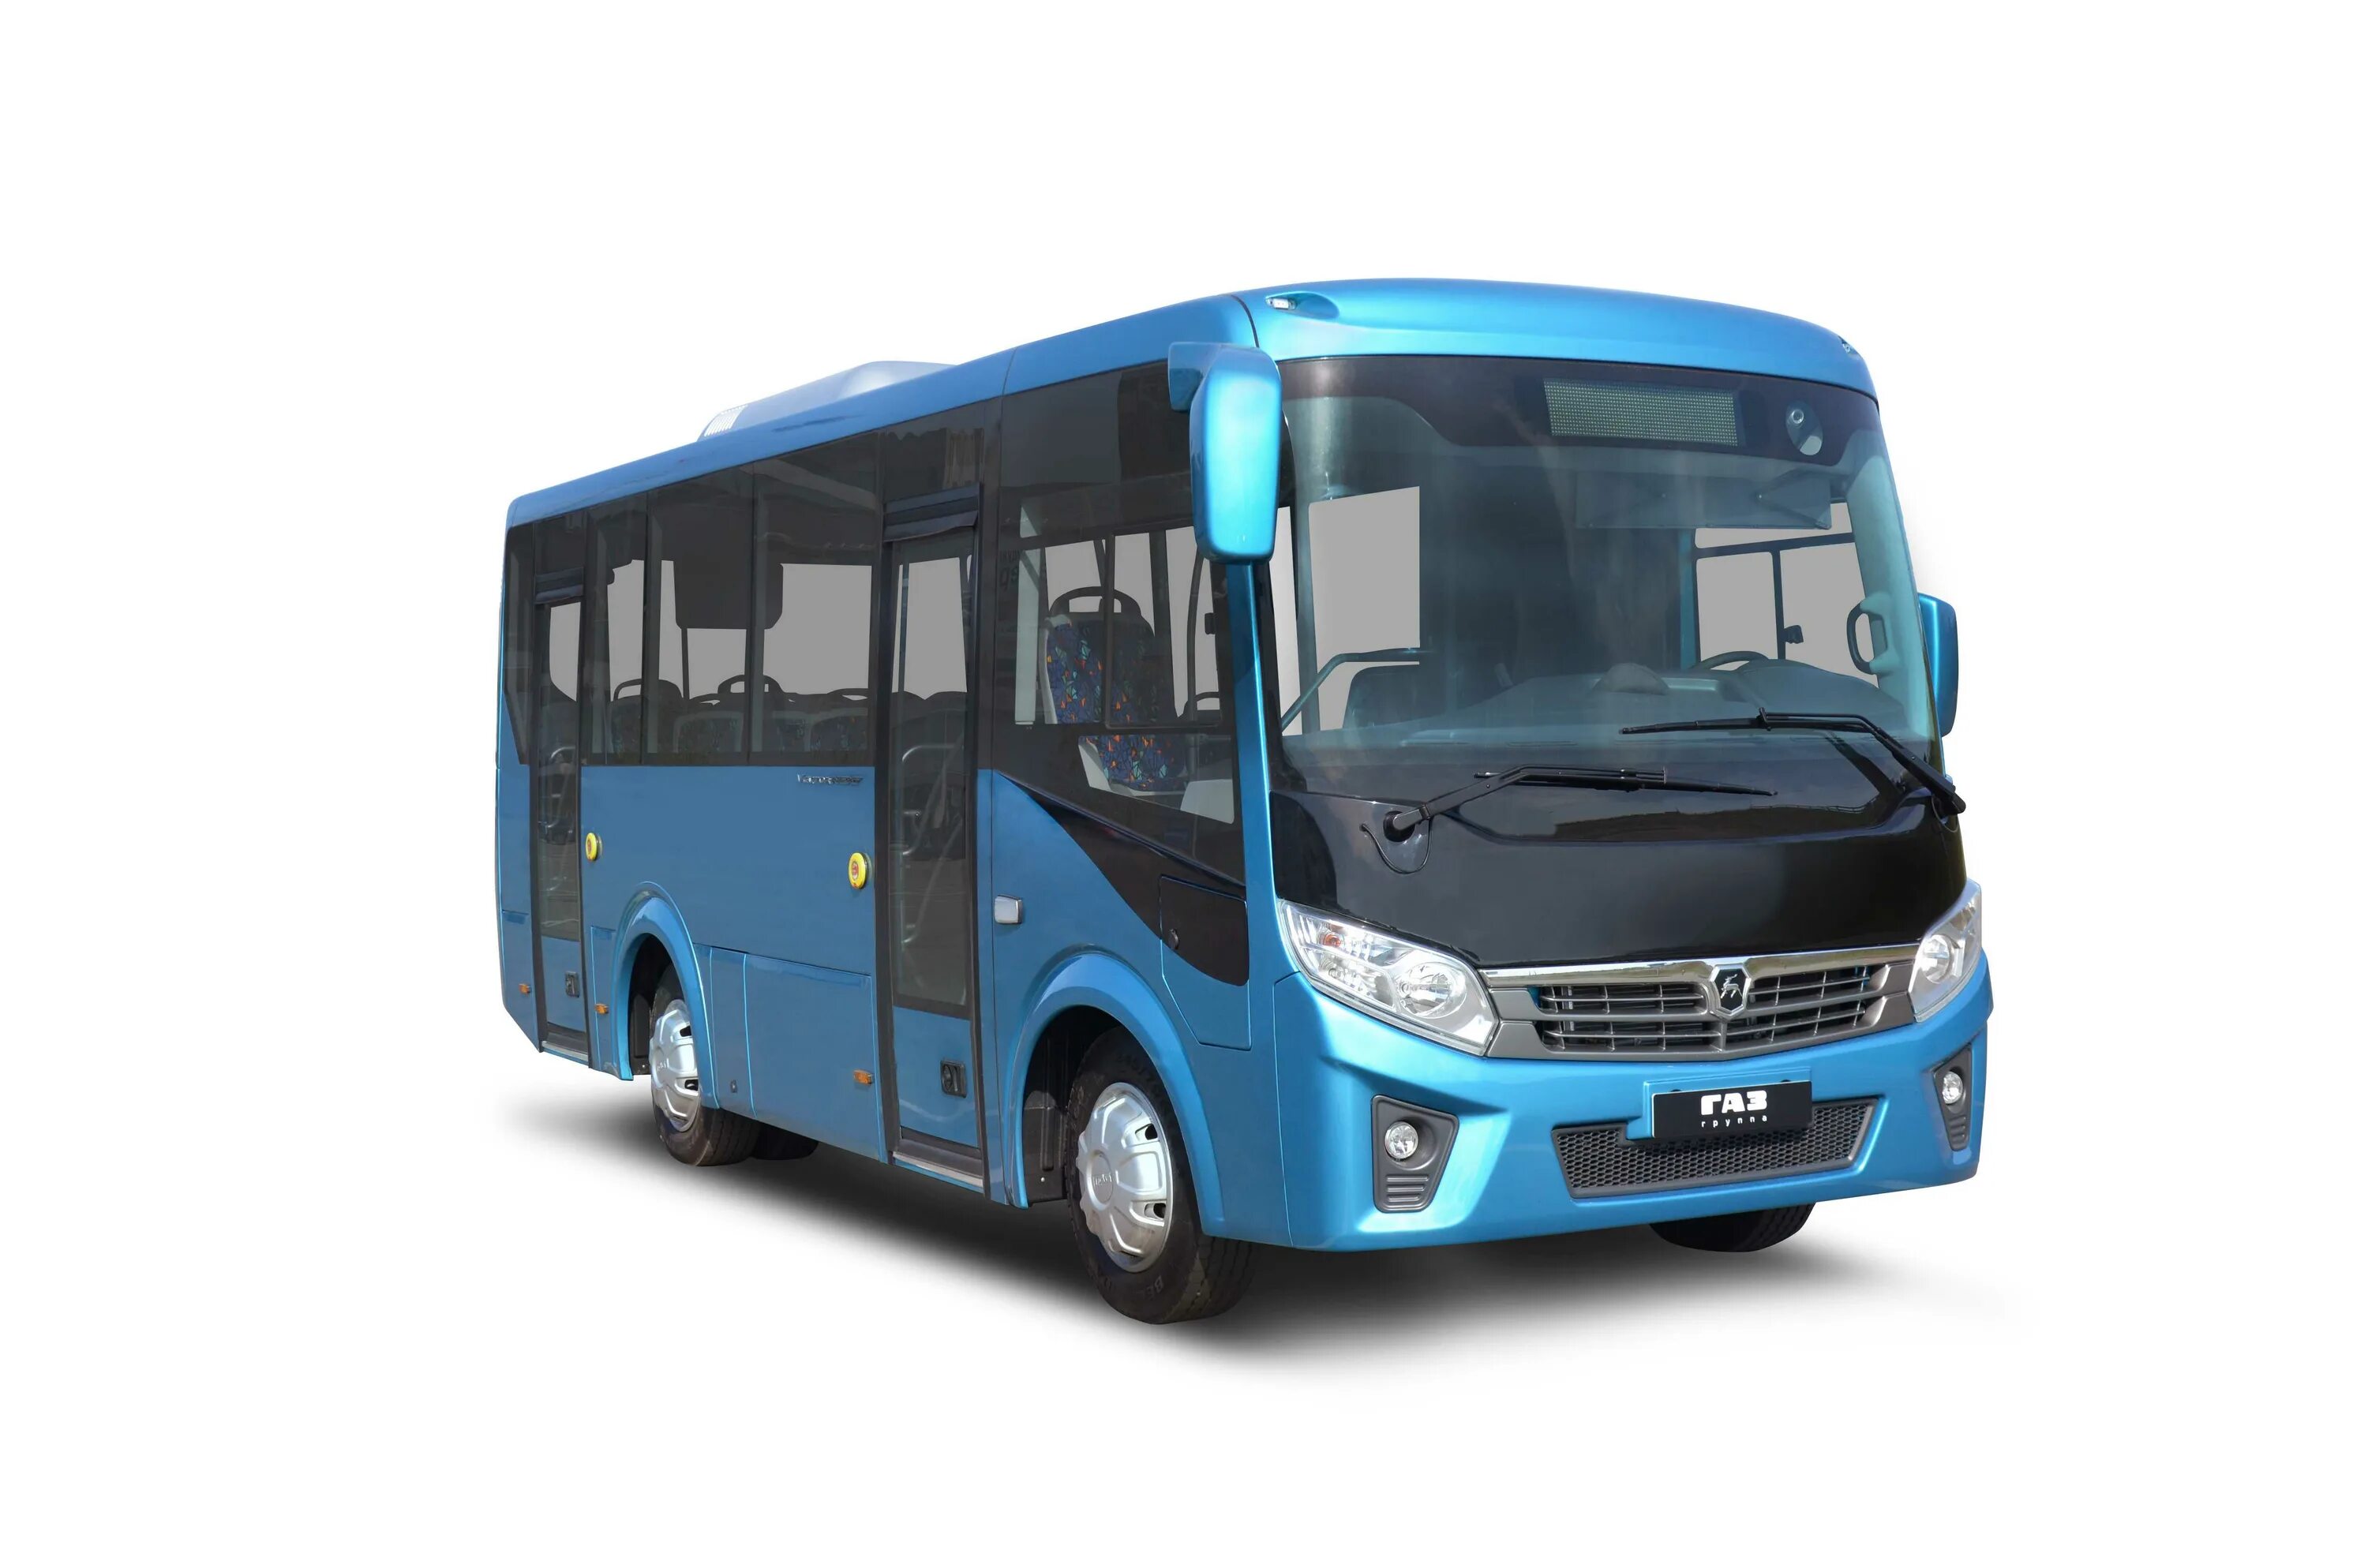 Автобус вектор next. ПАЗ вектор Некст 7.6. Автобус ПАЗ 320405-04 вектор next. Автобус ГАЗ вектор Некст. ПАЗ-320405-04 vector next.